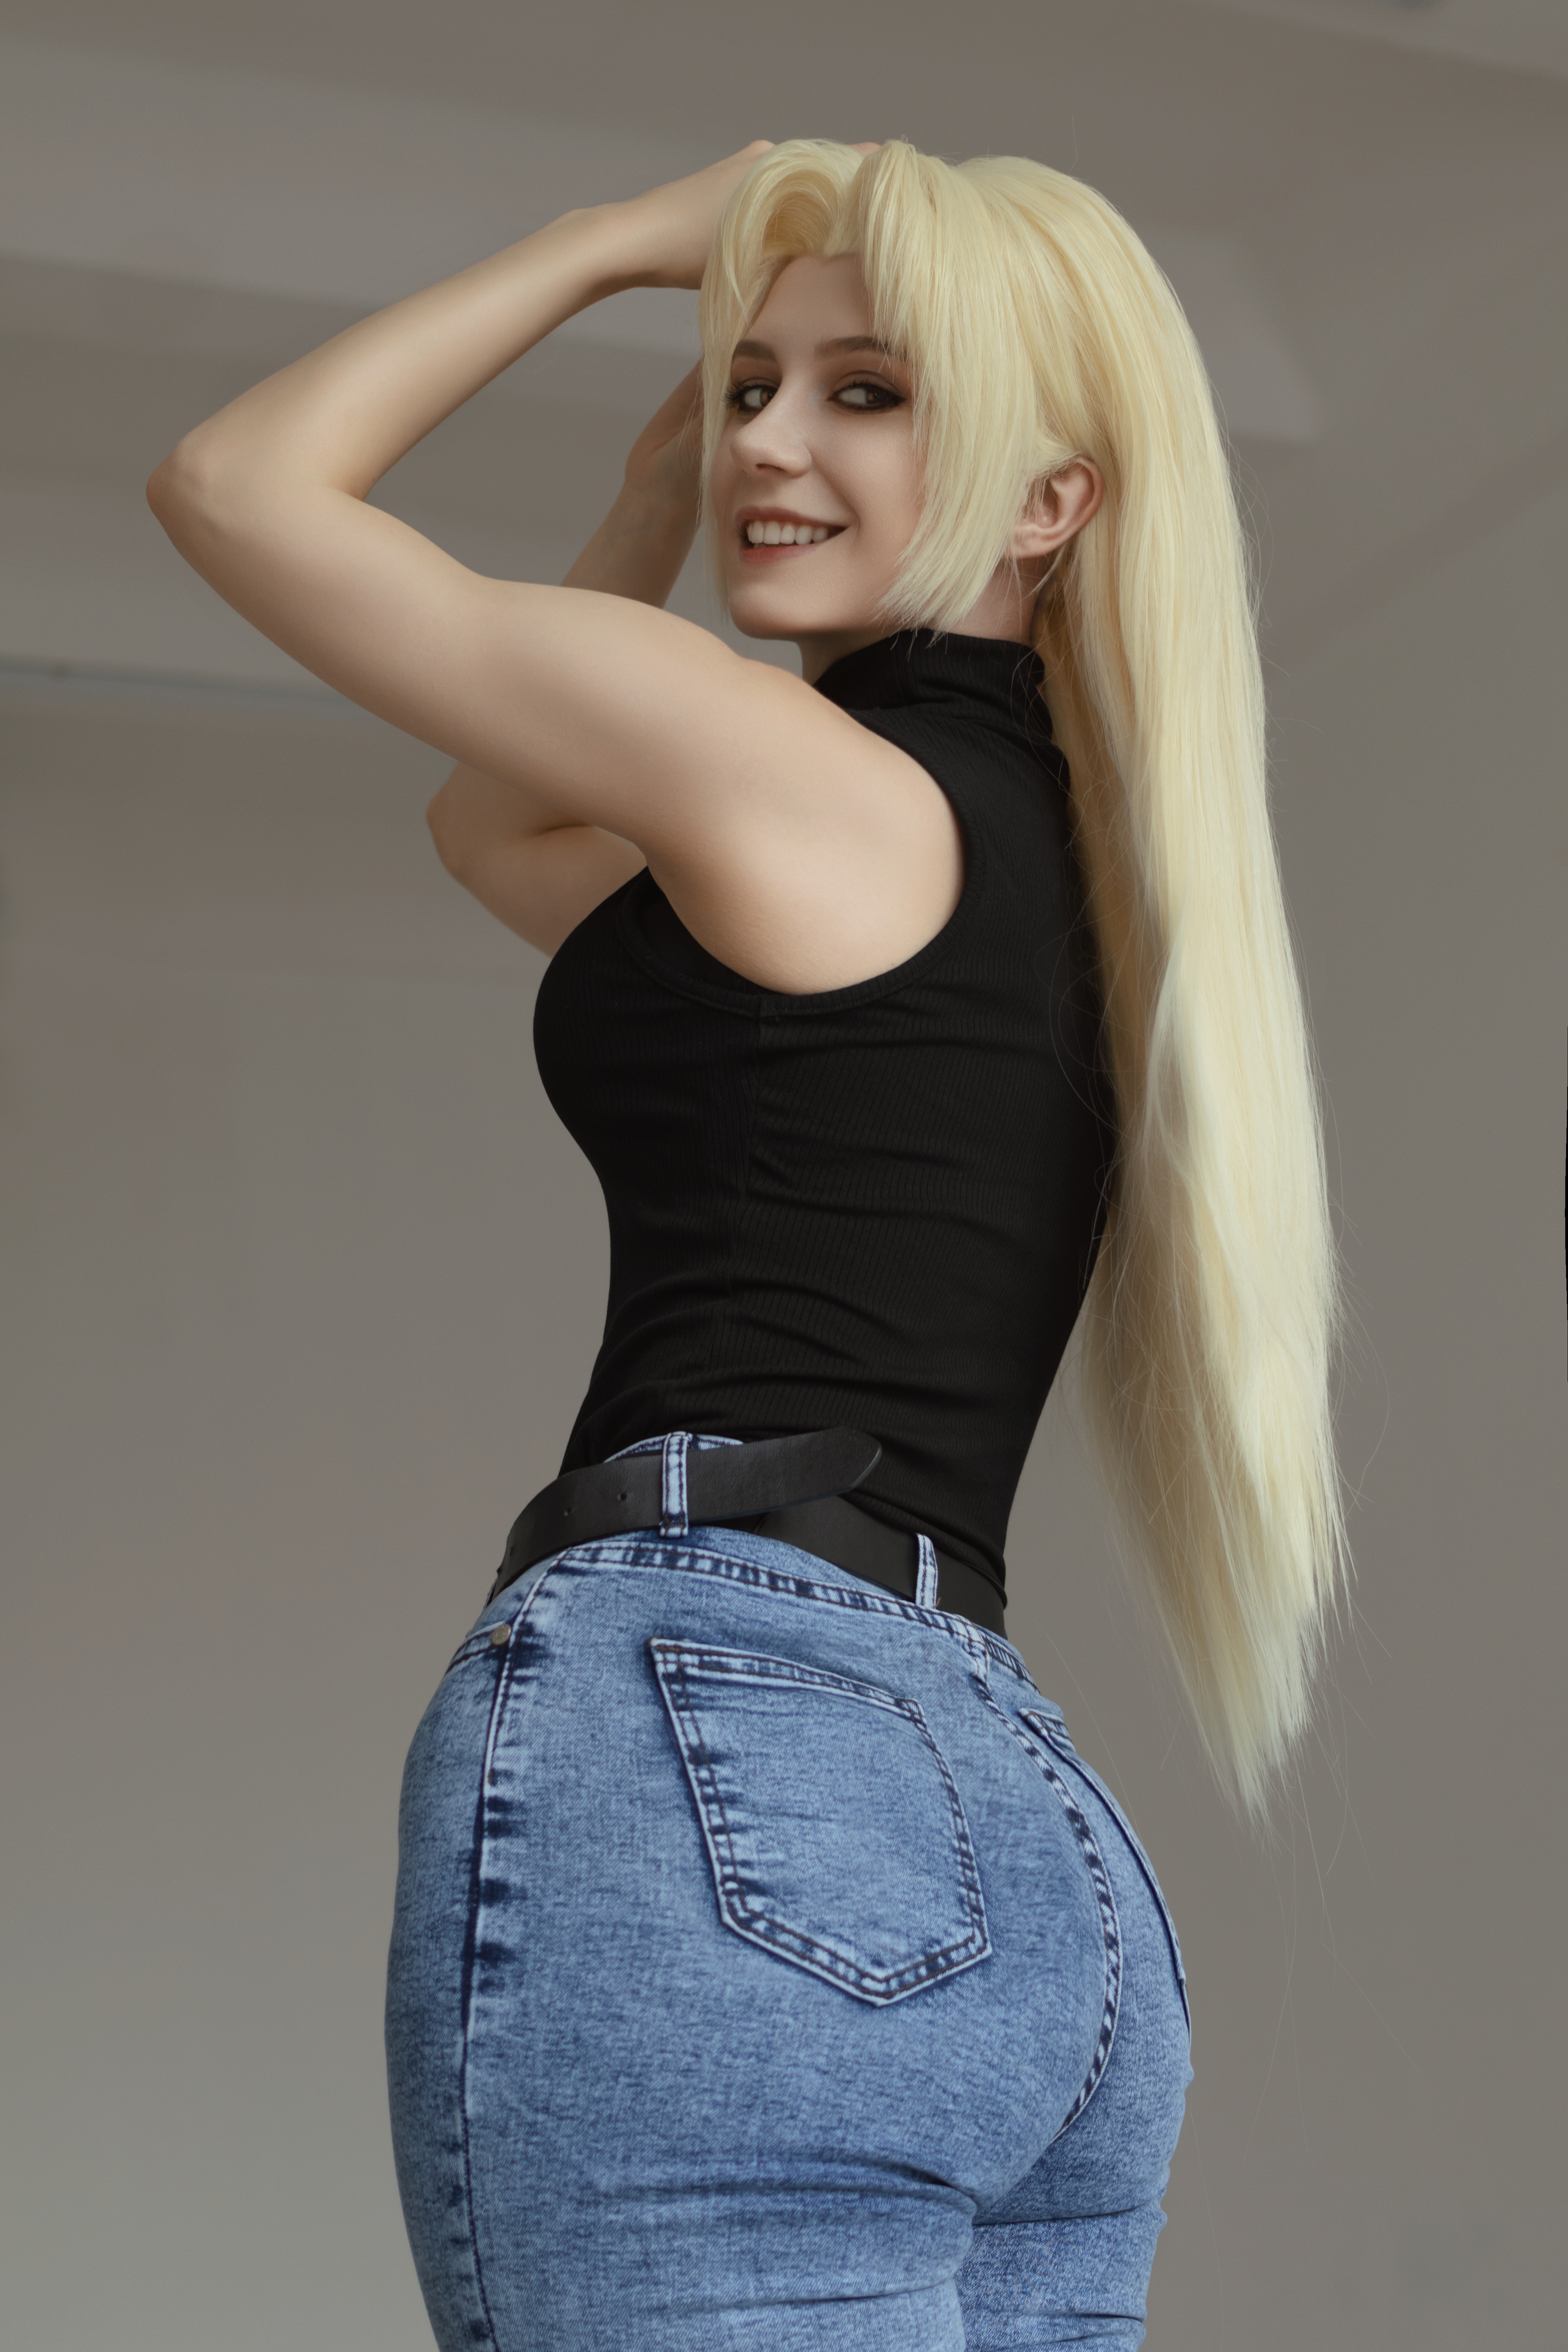 Jeans Blonde Looking Over Shoulder Teeth Looking At Viewer Smiling Portrait Display Long Hair Arms U 4000x6000